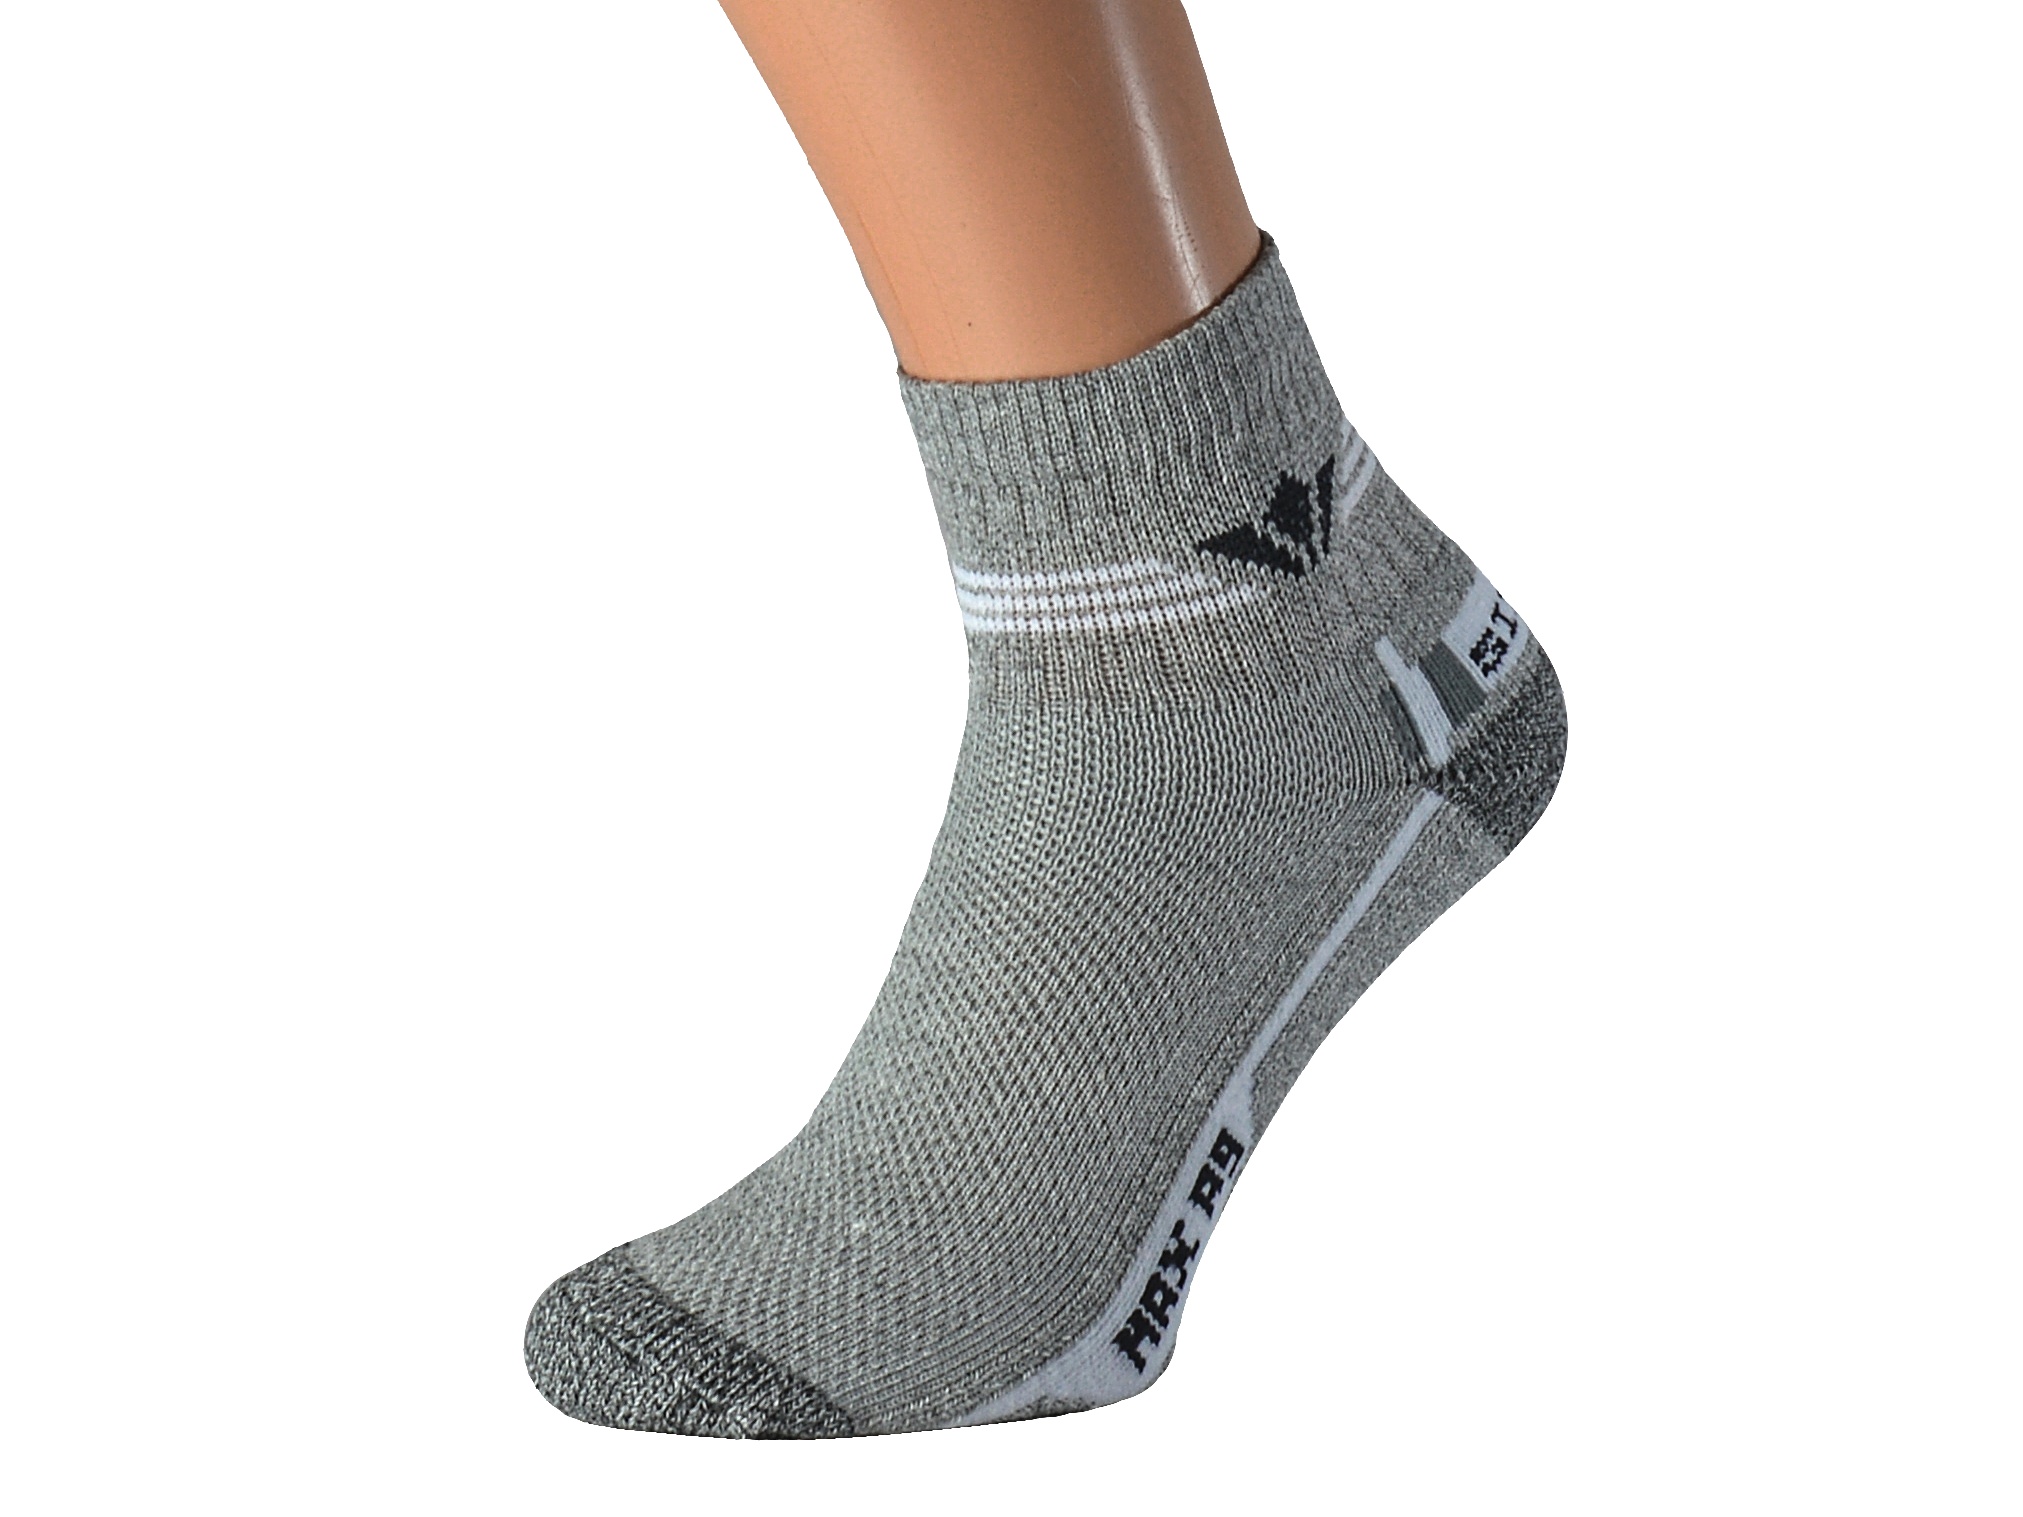 Froté ponožky se stříbrem KRASITO KUKS Barva: Světle šedé, Velikost: EUR 39-41 (UK 6-7)